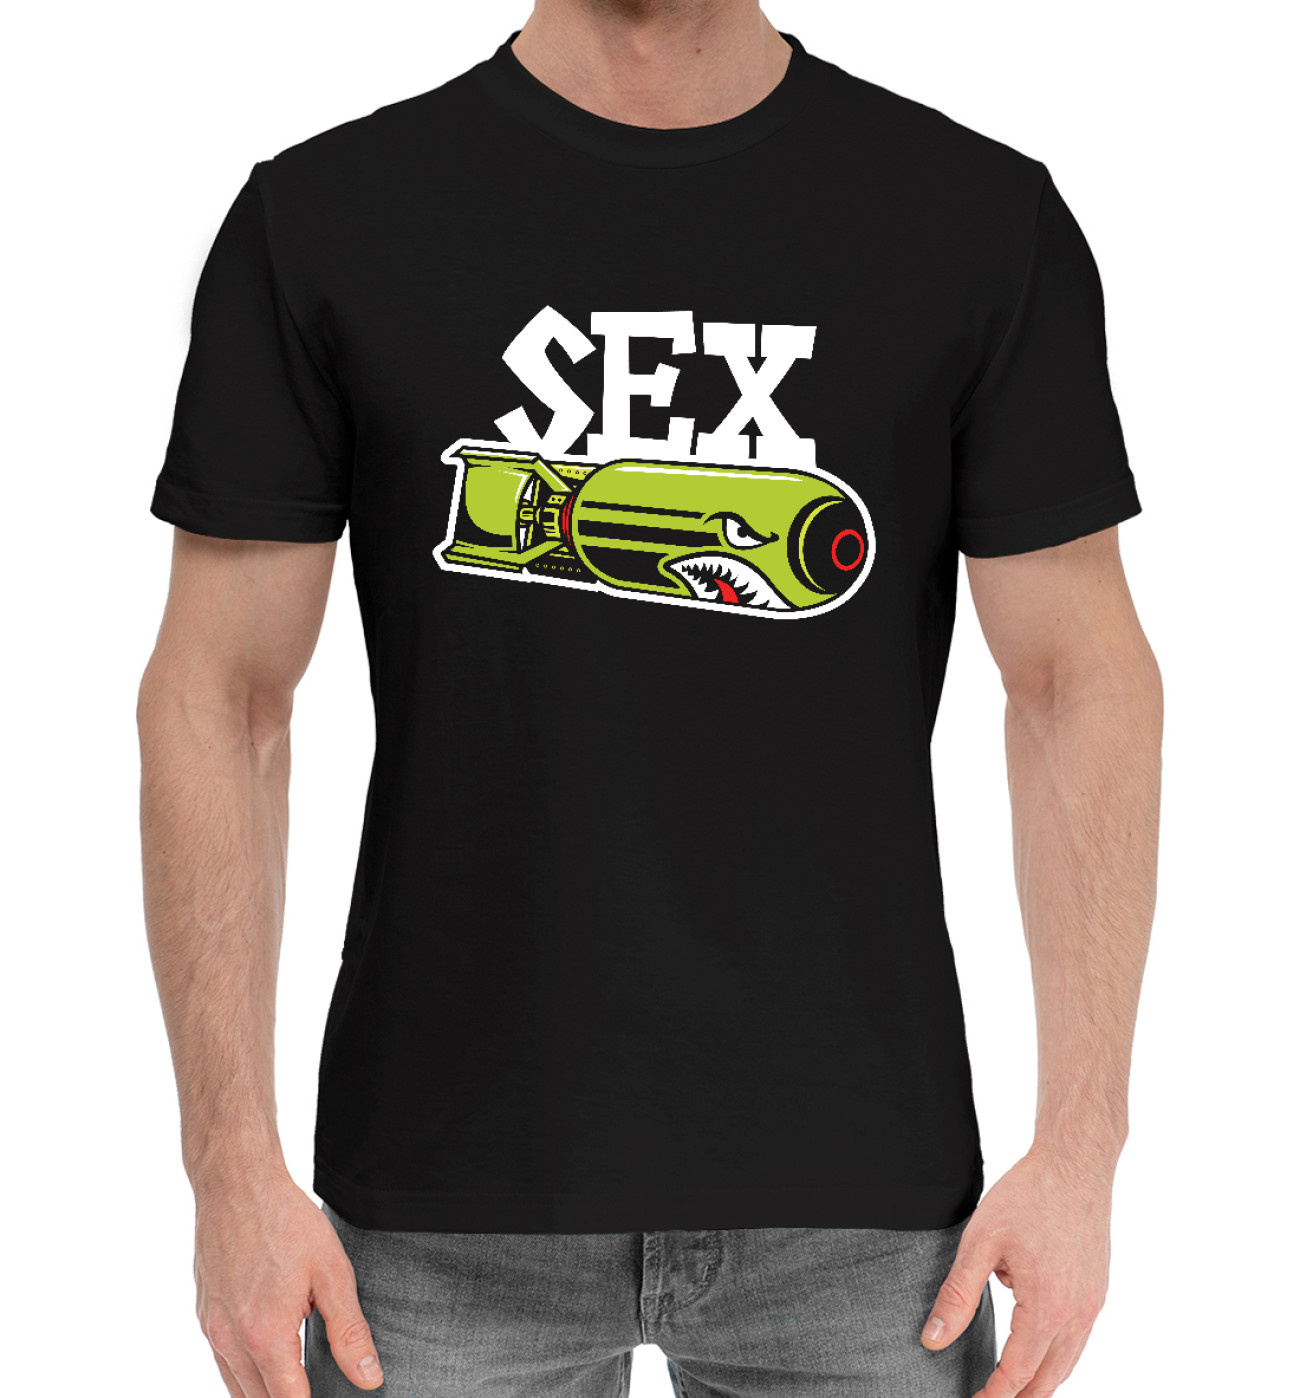 Мужская Хлопковая футболка Секс БОМБА, артикул: ARC-526999-hfu-2